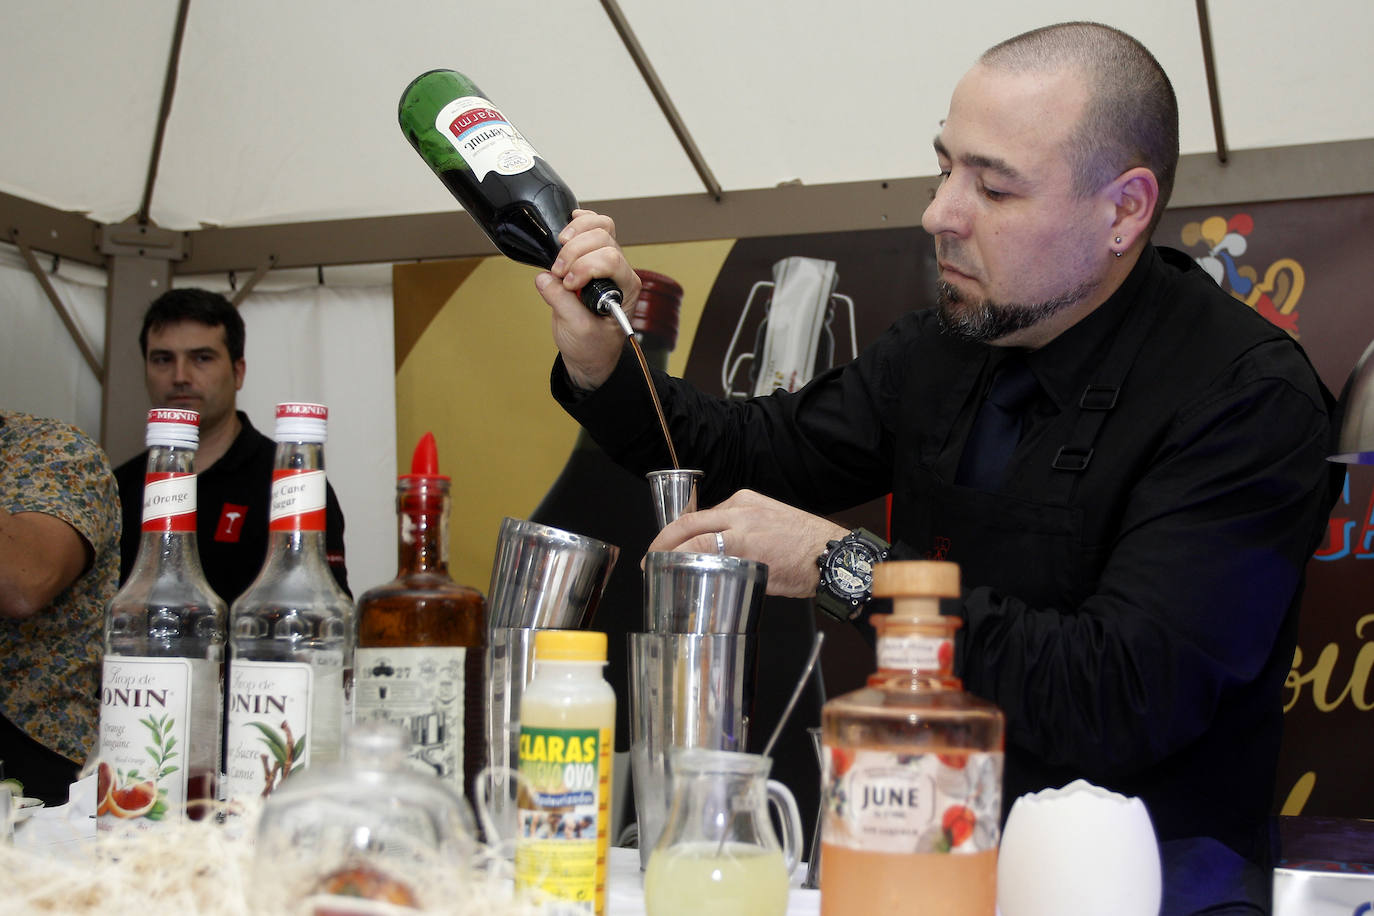 Fotos: El barman del &#039;Olivia&#039;, Mario Alberto López, gana el Nacional de Coctelería con Vermut Igarmi